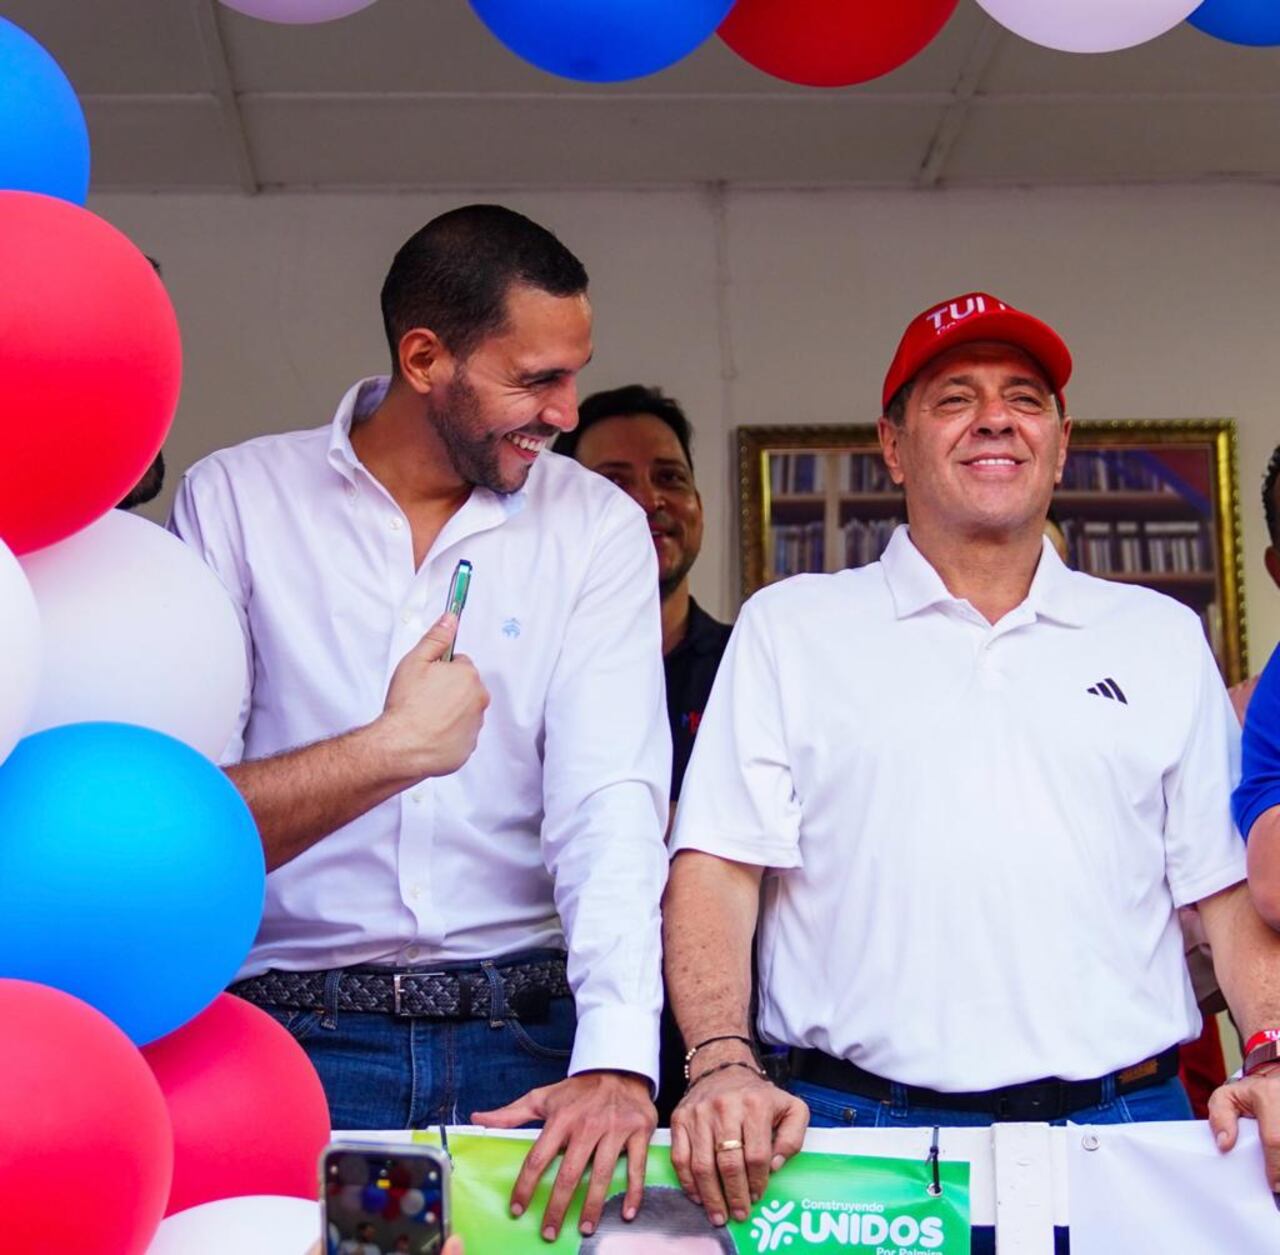 Tulio Gómez anunció su apoyo a un joven candidato a la Asamblea del Valle